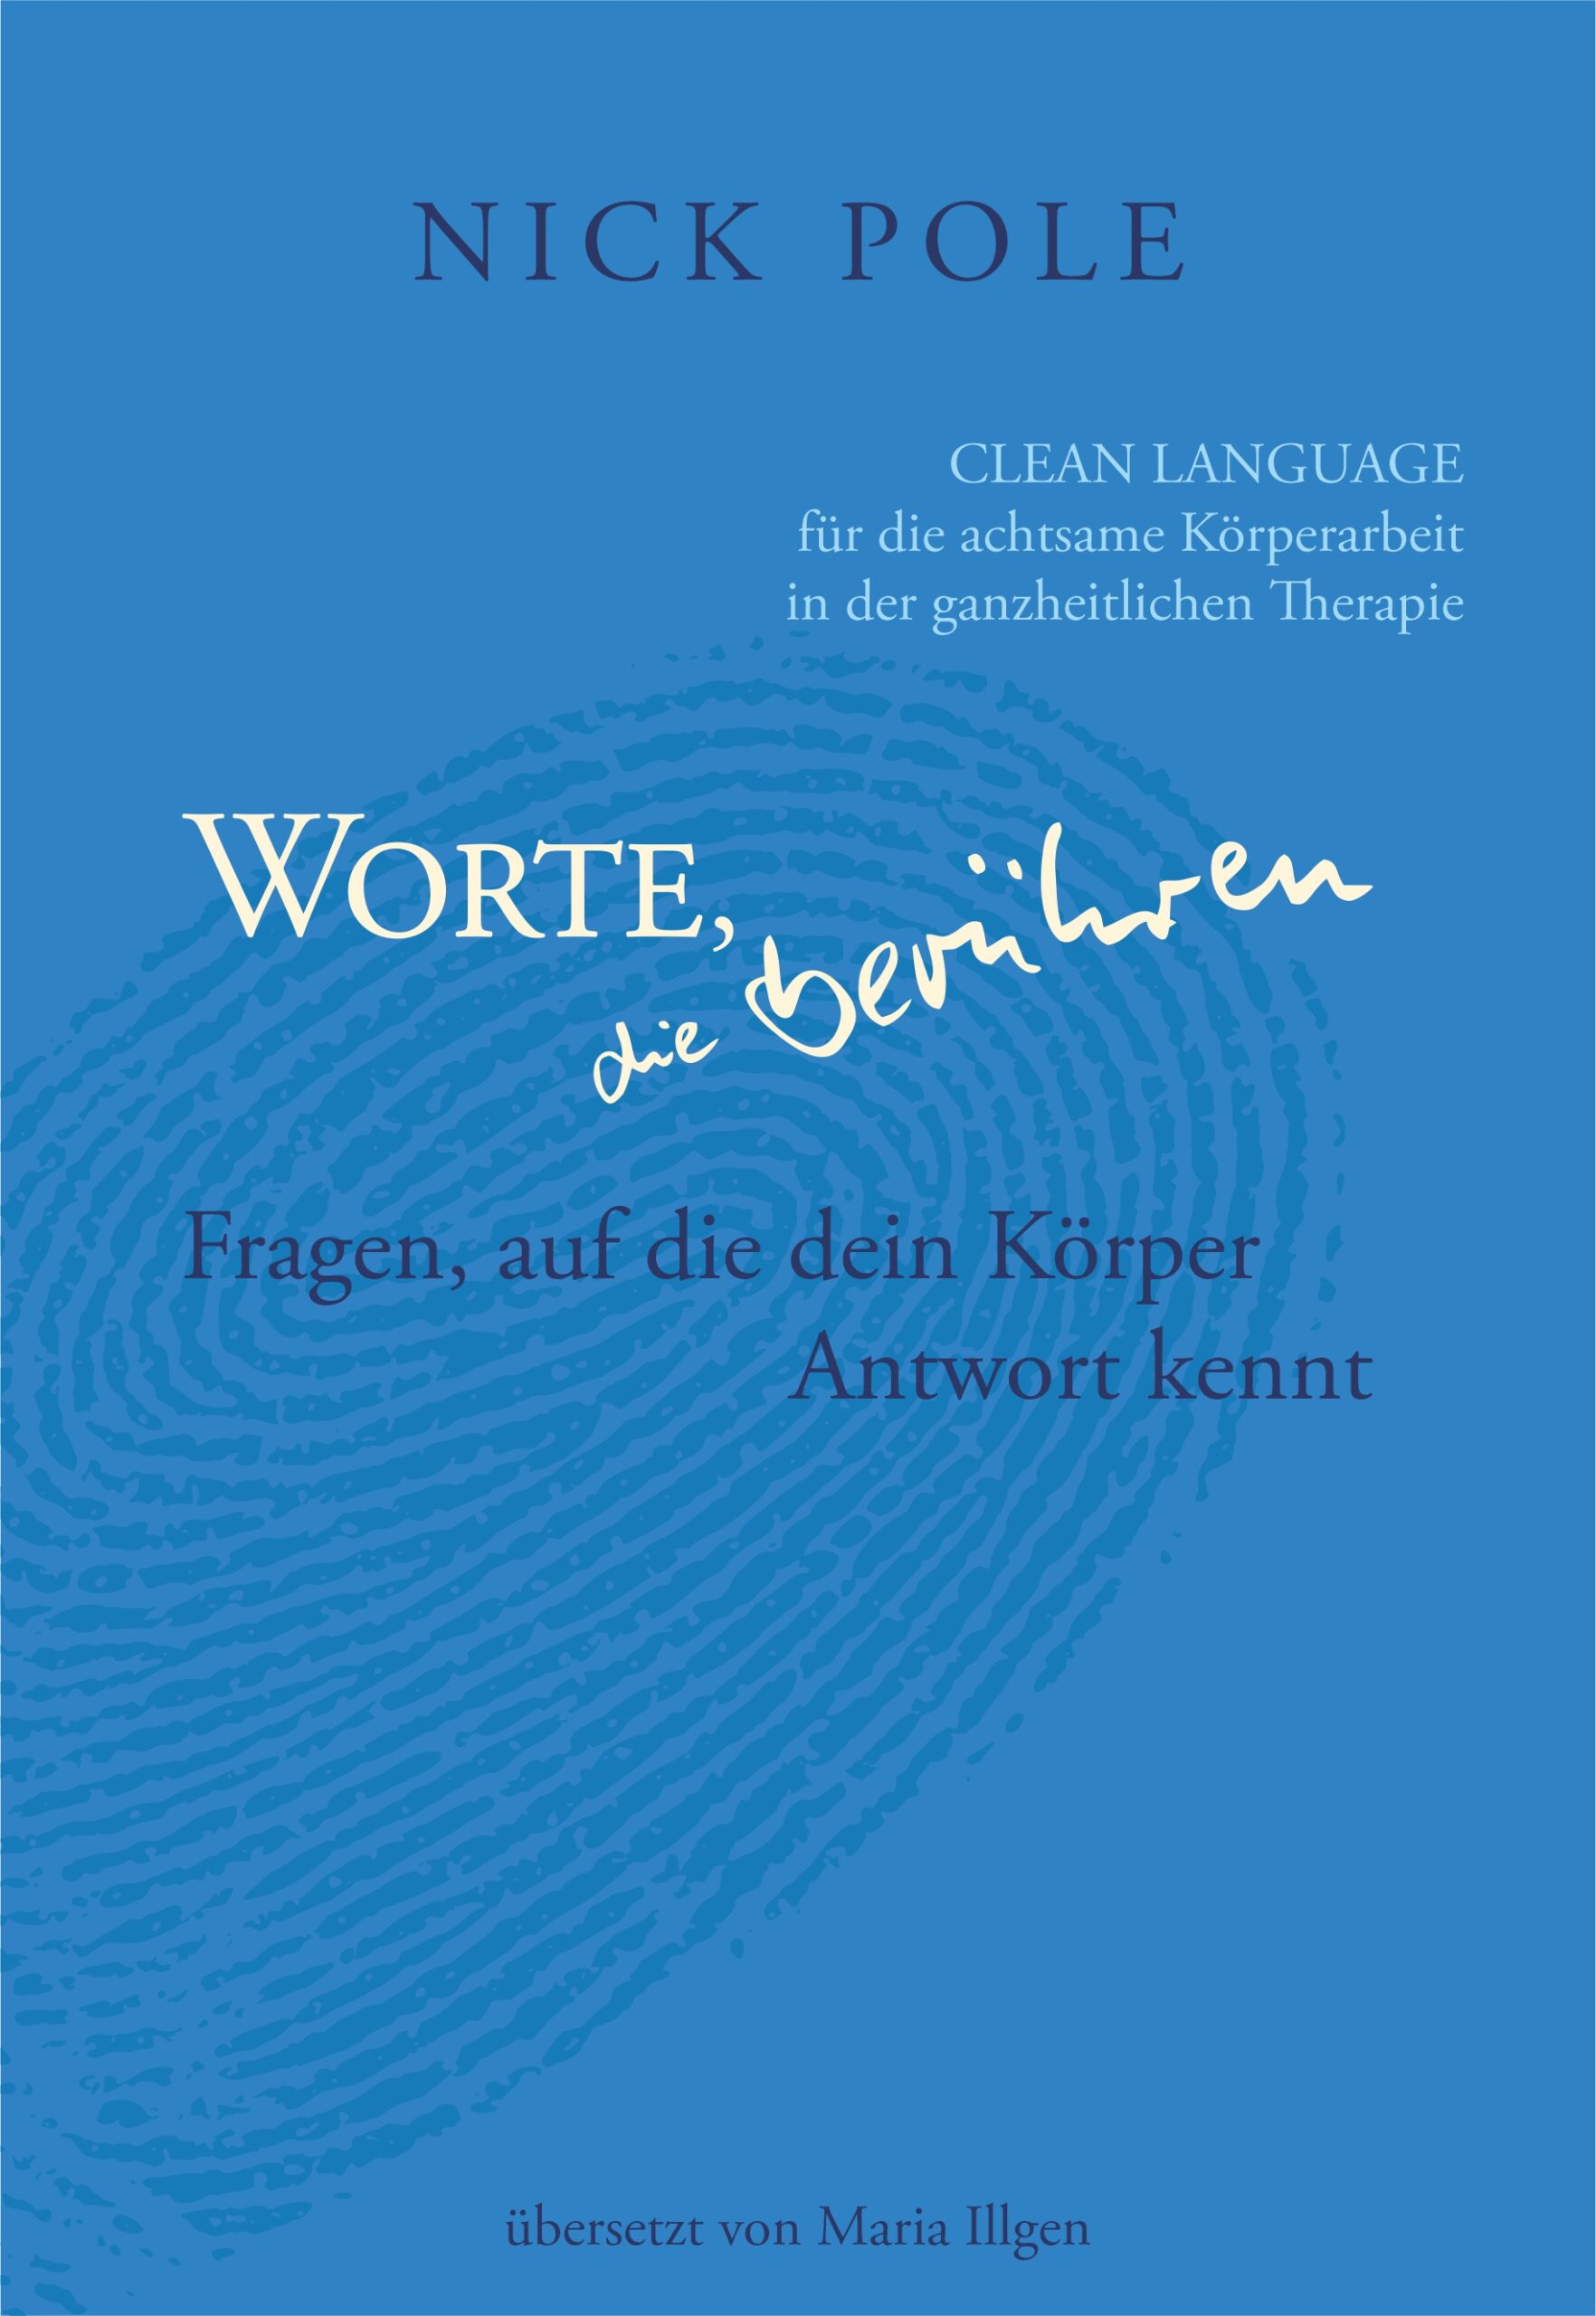 Worte, die berühren - Clean Language Buch von Nick Pole auf Deutsch